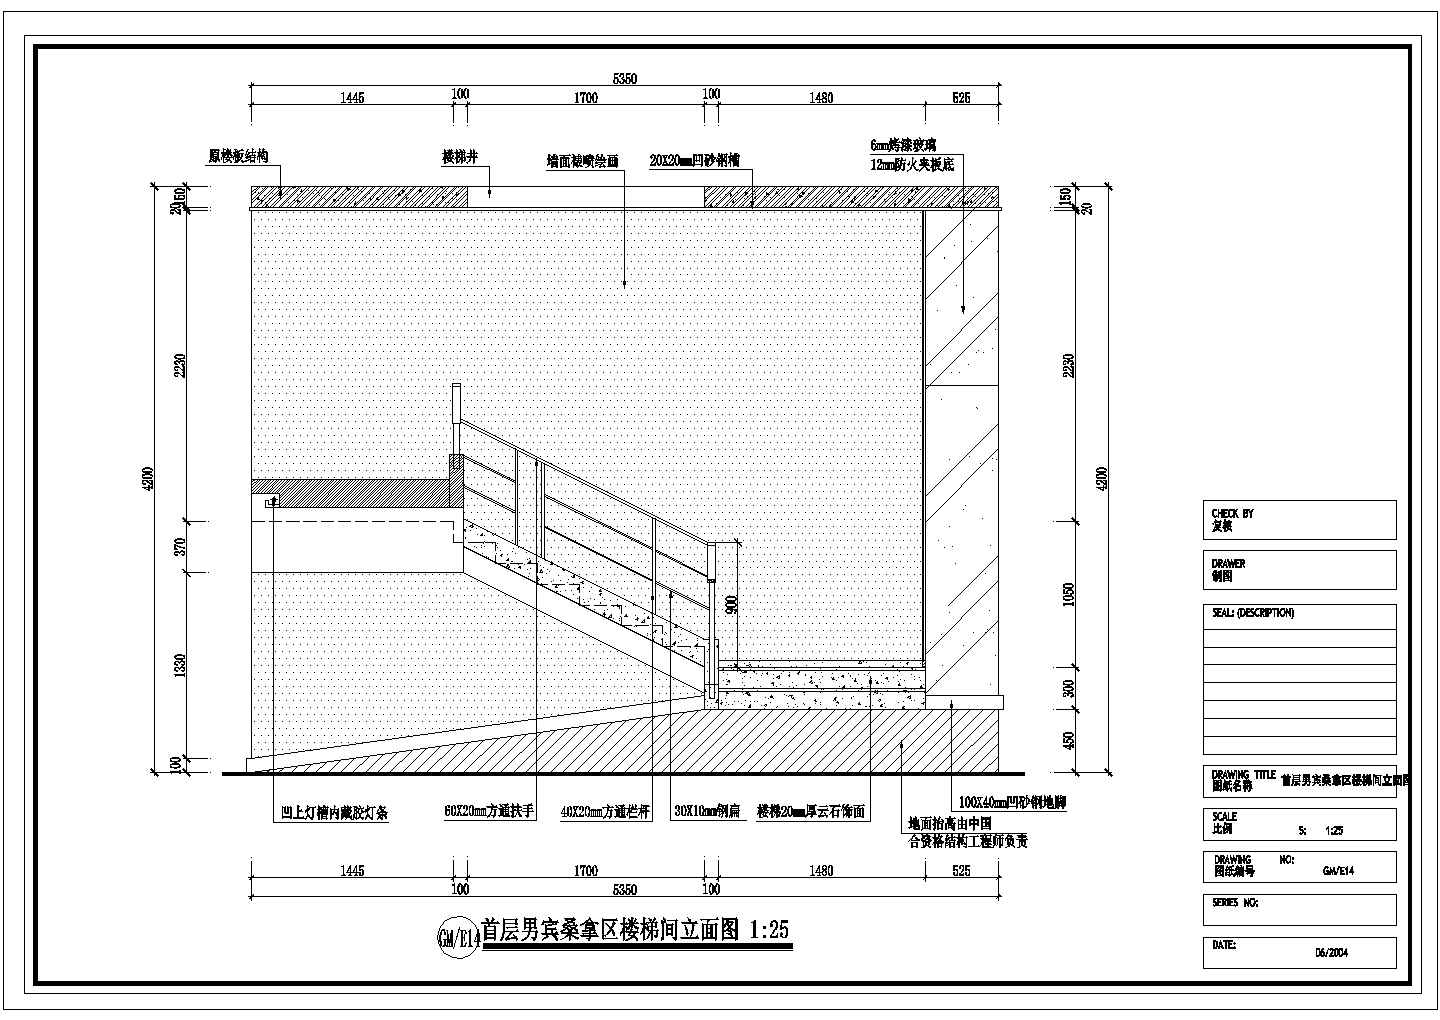 某大型洗浴空间男宾桑拿区首层男宾桑拿区楼梯间CAD设计完整立面图